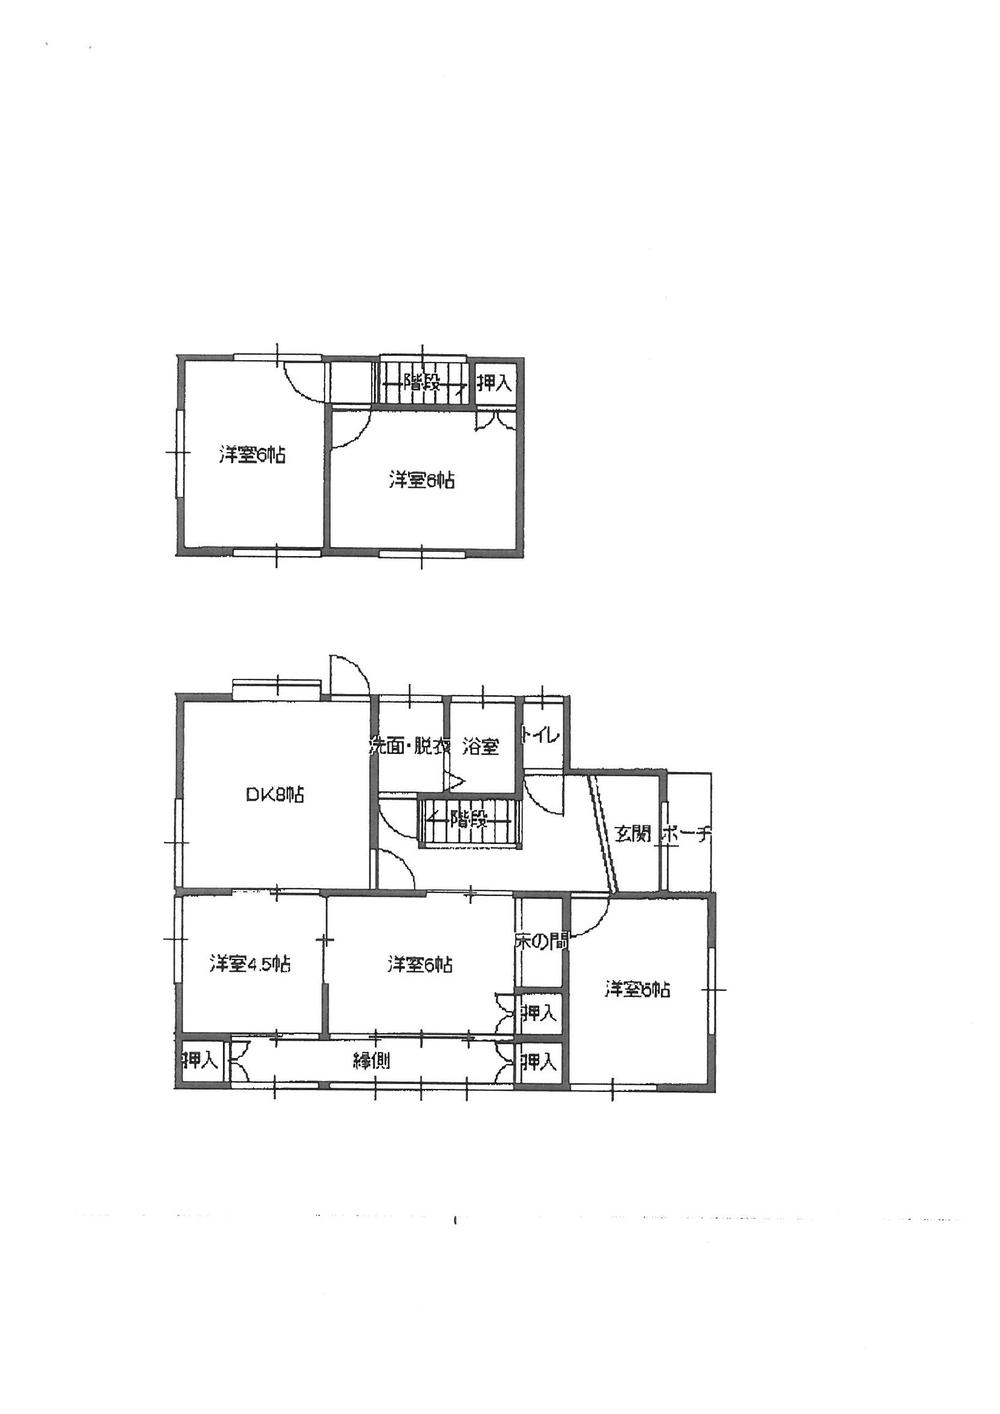 Floor plan. 8.8 million yen, 5DK, Land area 198.38 sq m , Building area 90.24 sq m